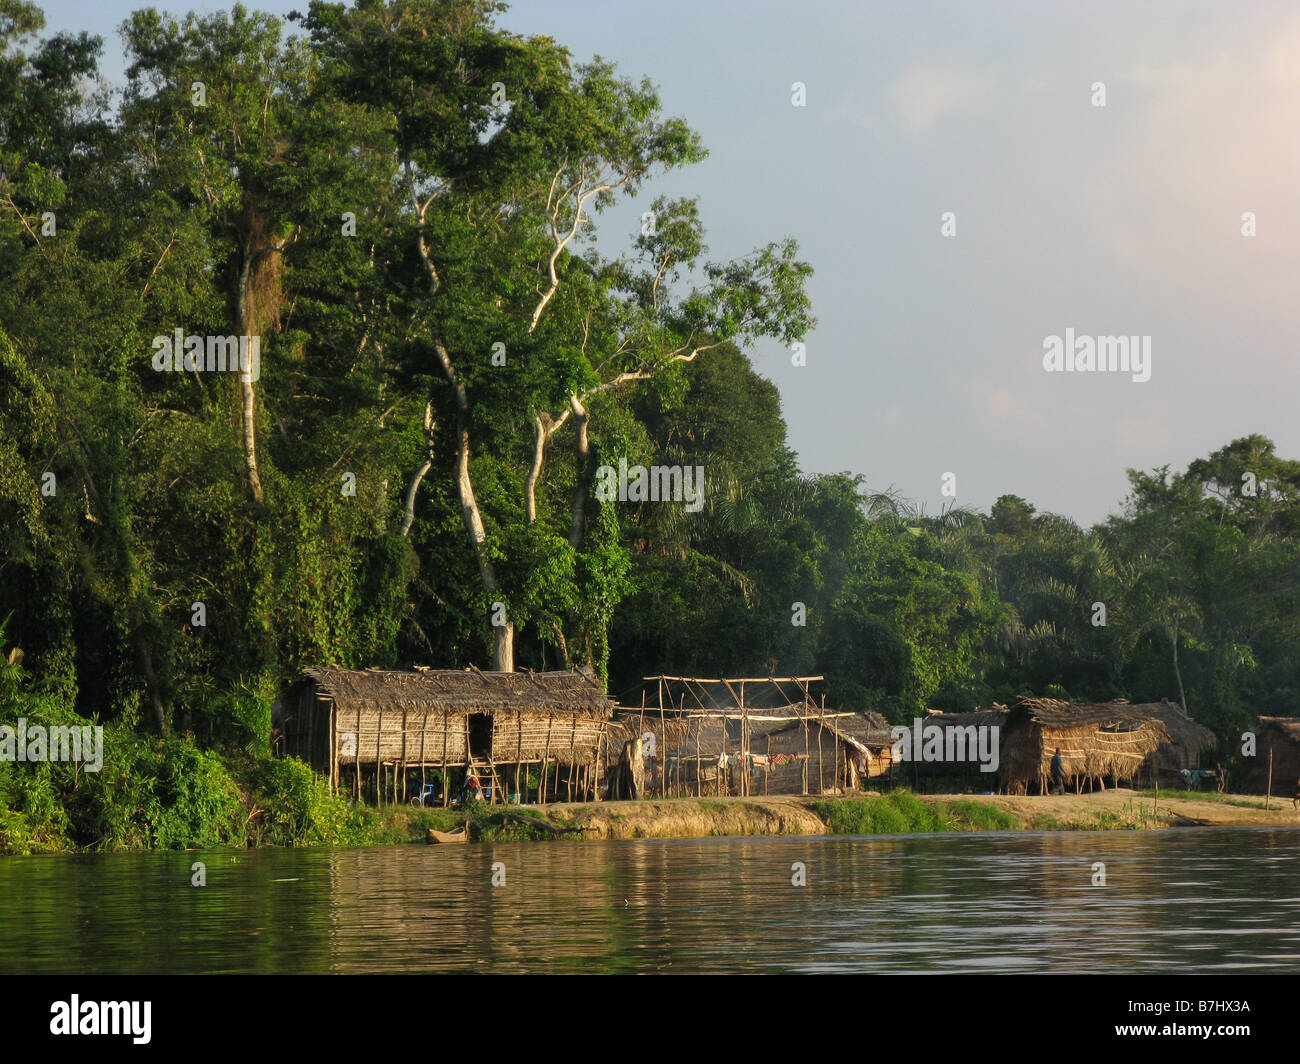 Fischerdorf Reet gedeckte Hütten Gras und Schilf auf Stelzen am Ufer des Kongo-Fluss in der Demokratischen Republik Kongo gesetzt Stockfoto